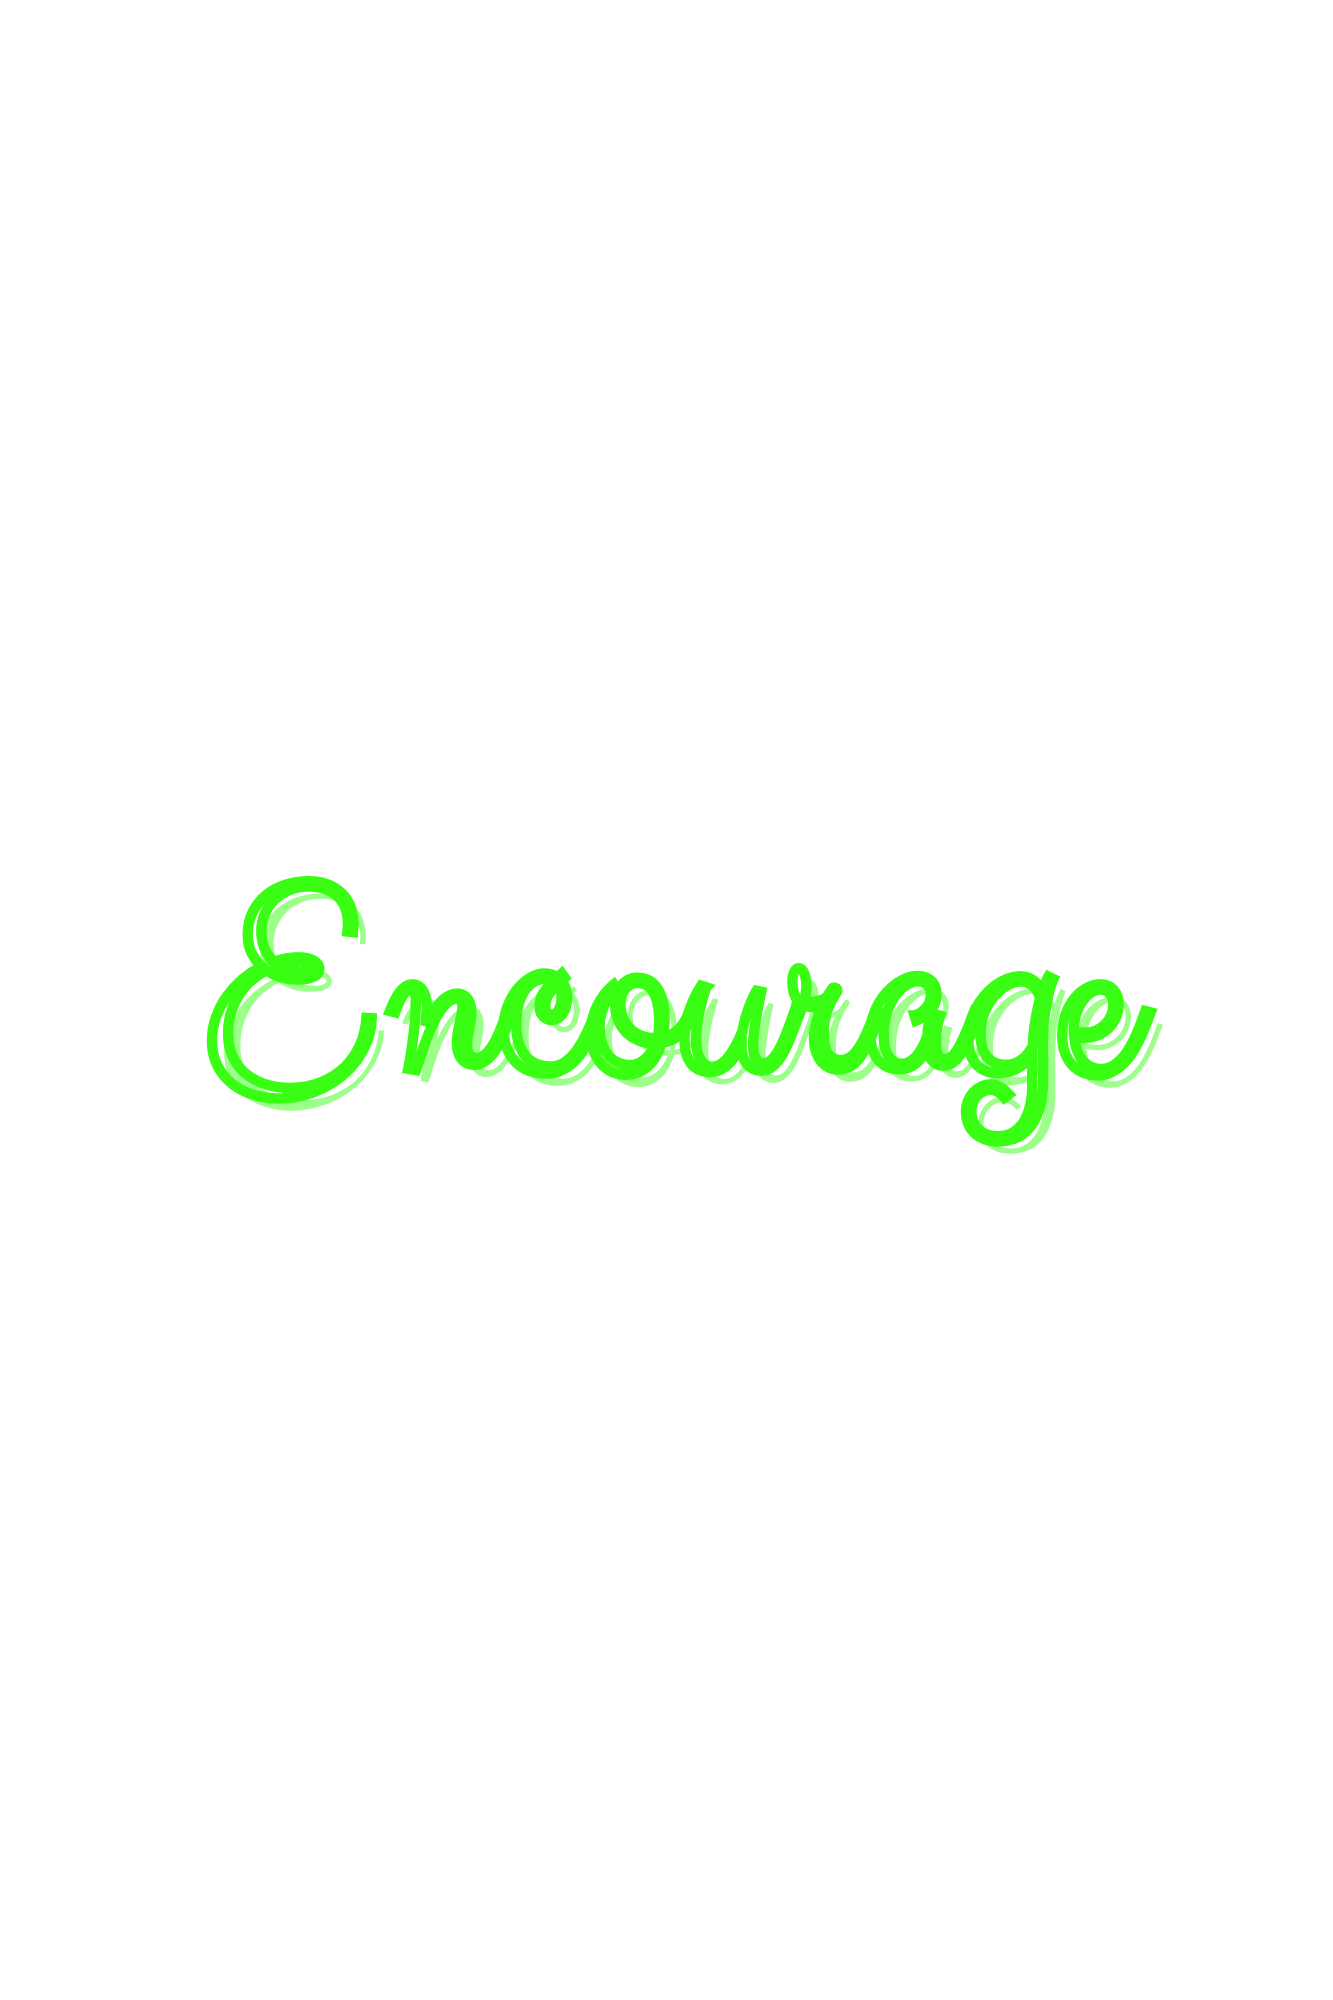 Encourage (1)